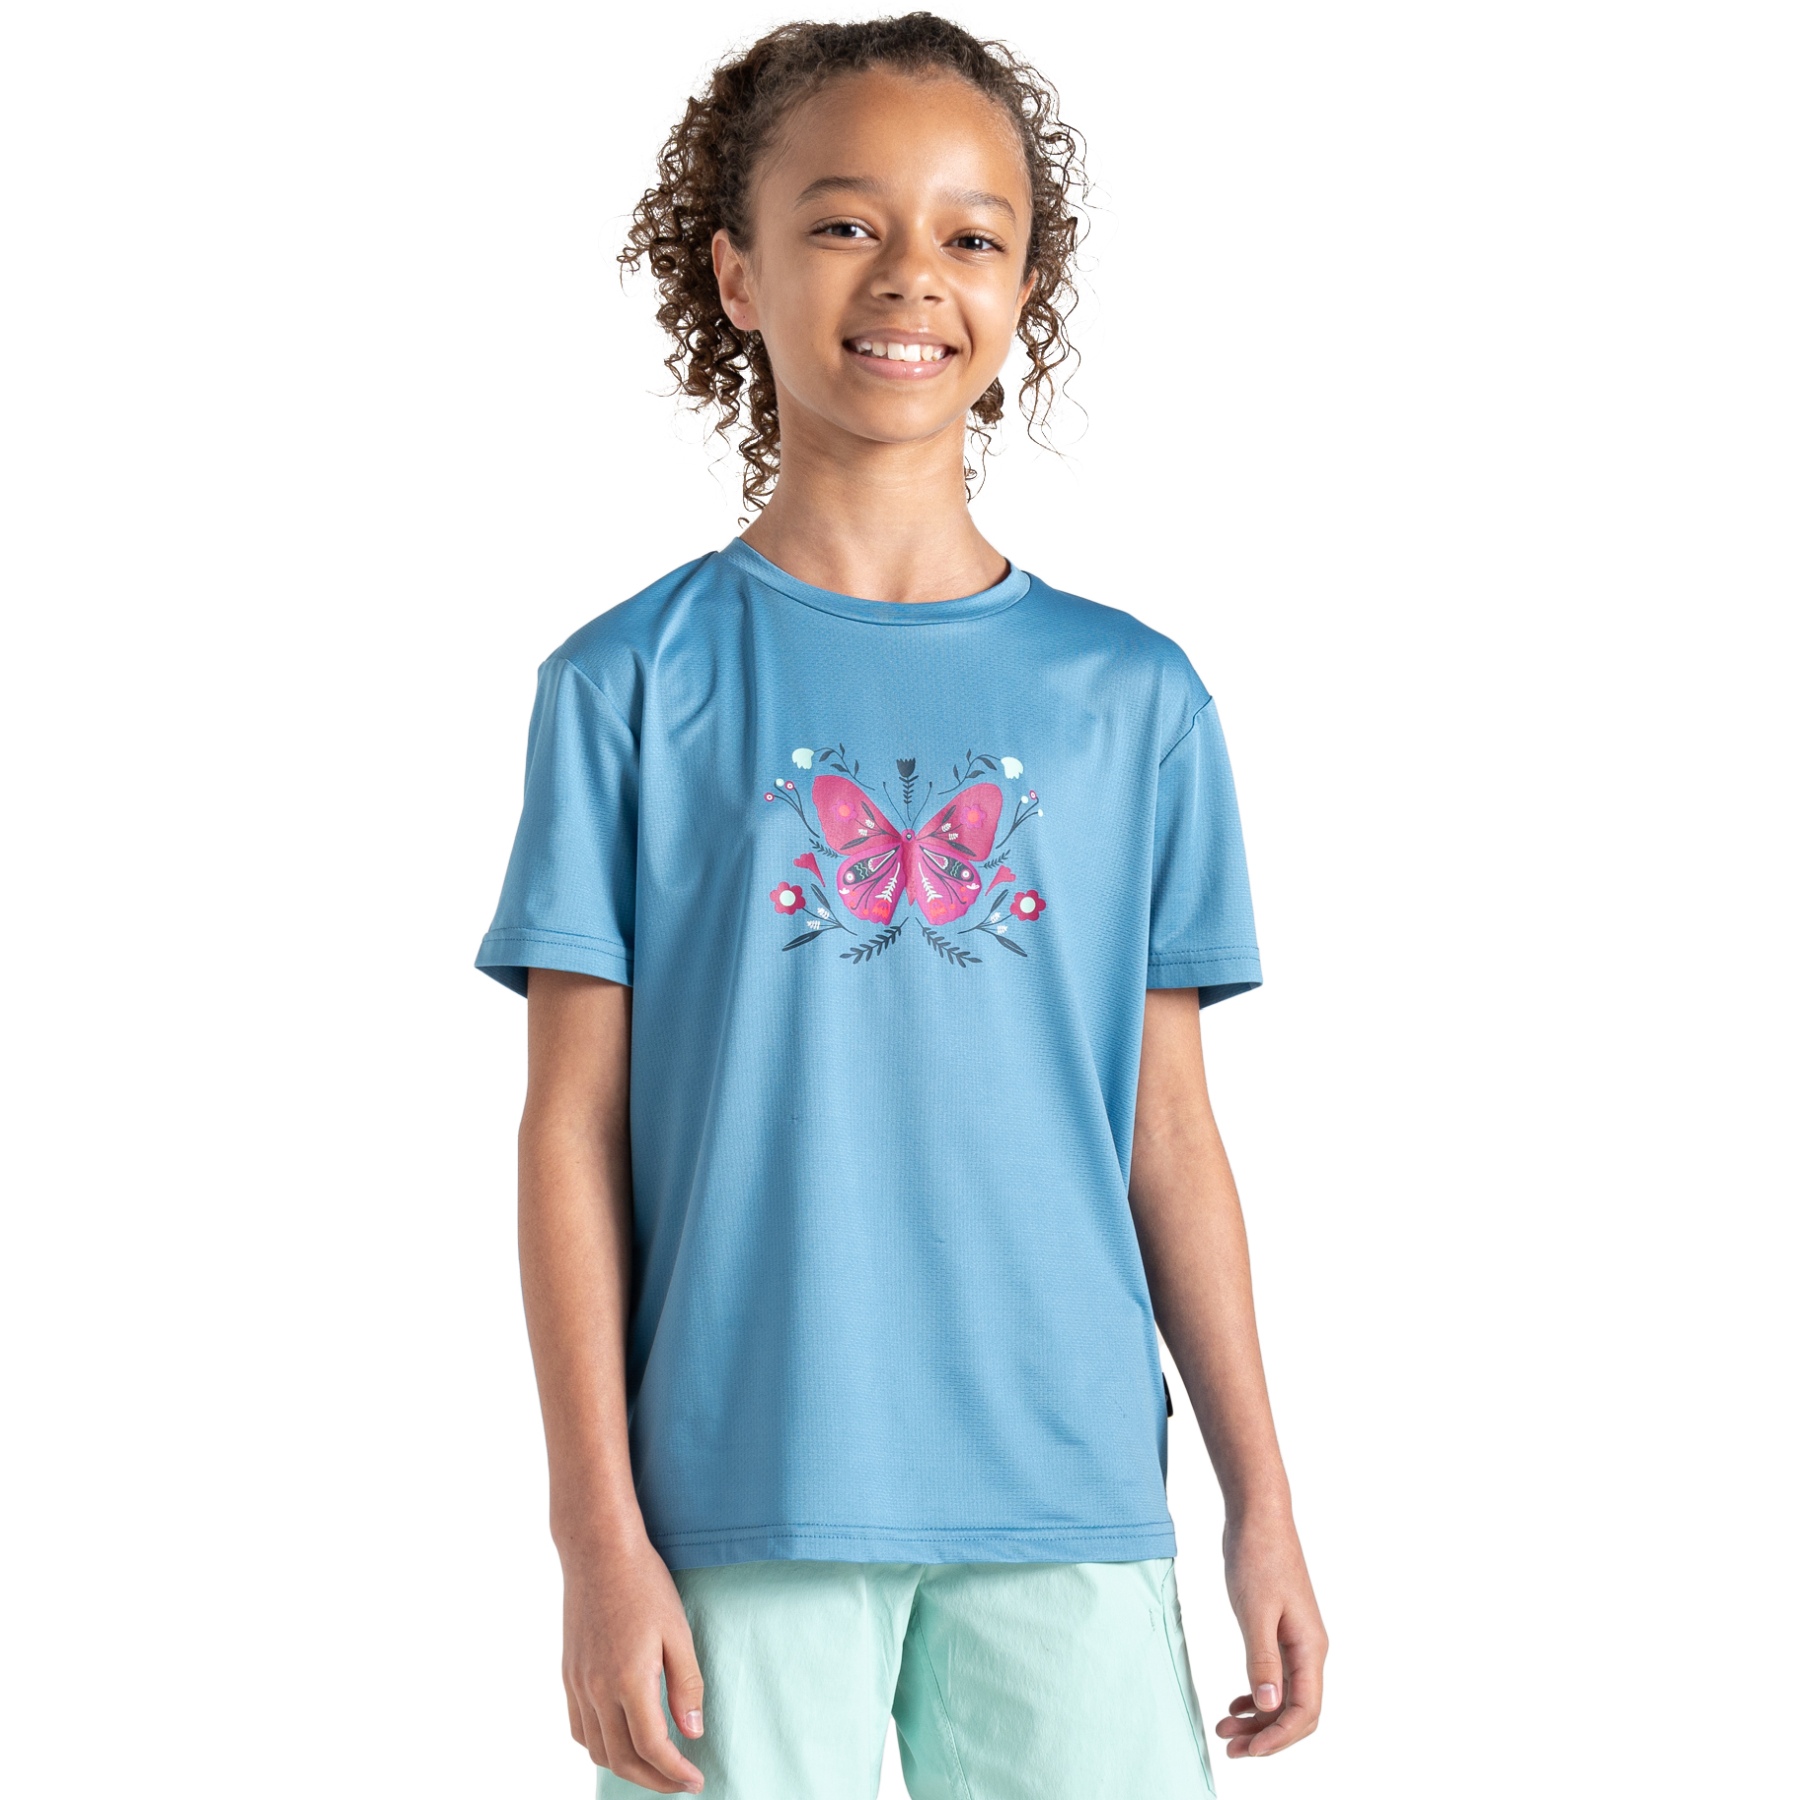 Produktbild von Dare 2b Amuse II T-Shirt Kinder - 255 Niagra Blue